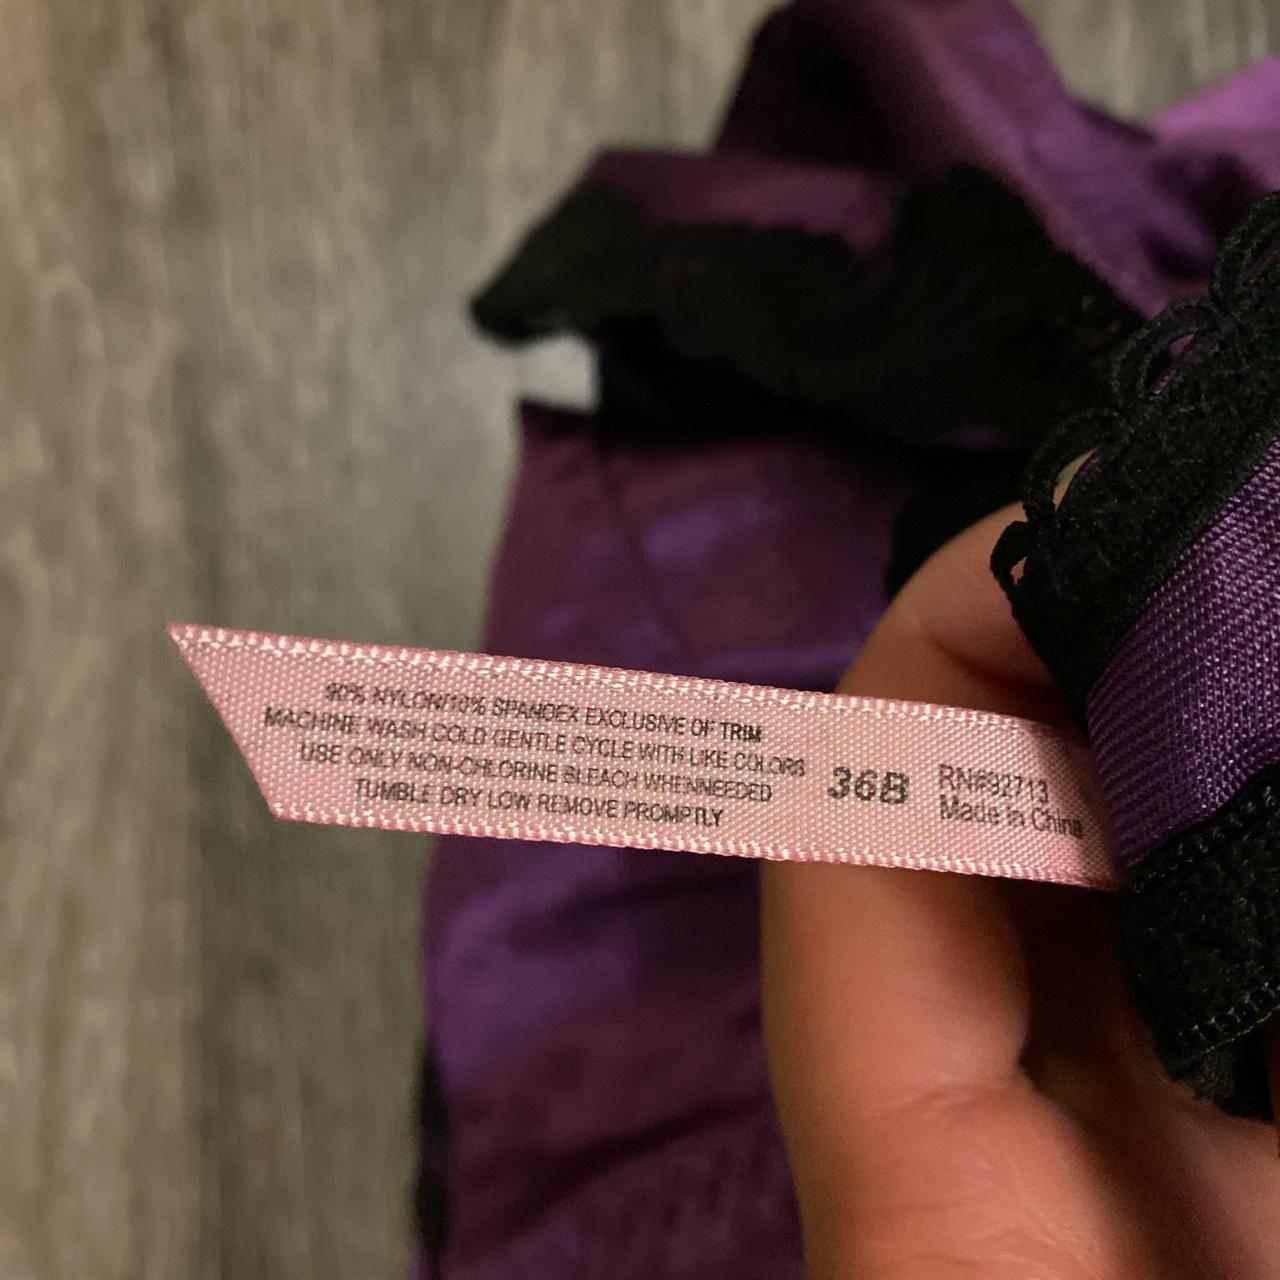 Product Image 4 - Purple lace corset lingerie top!